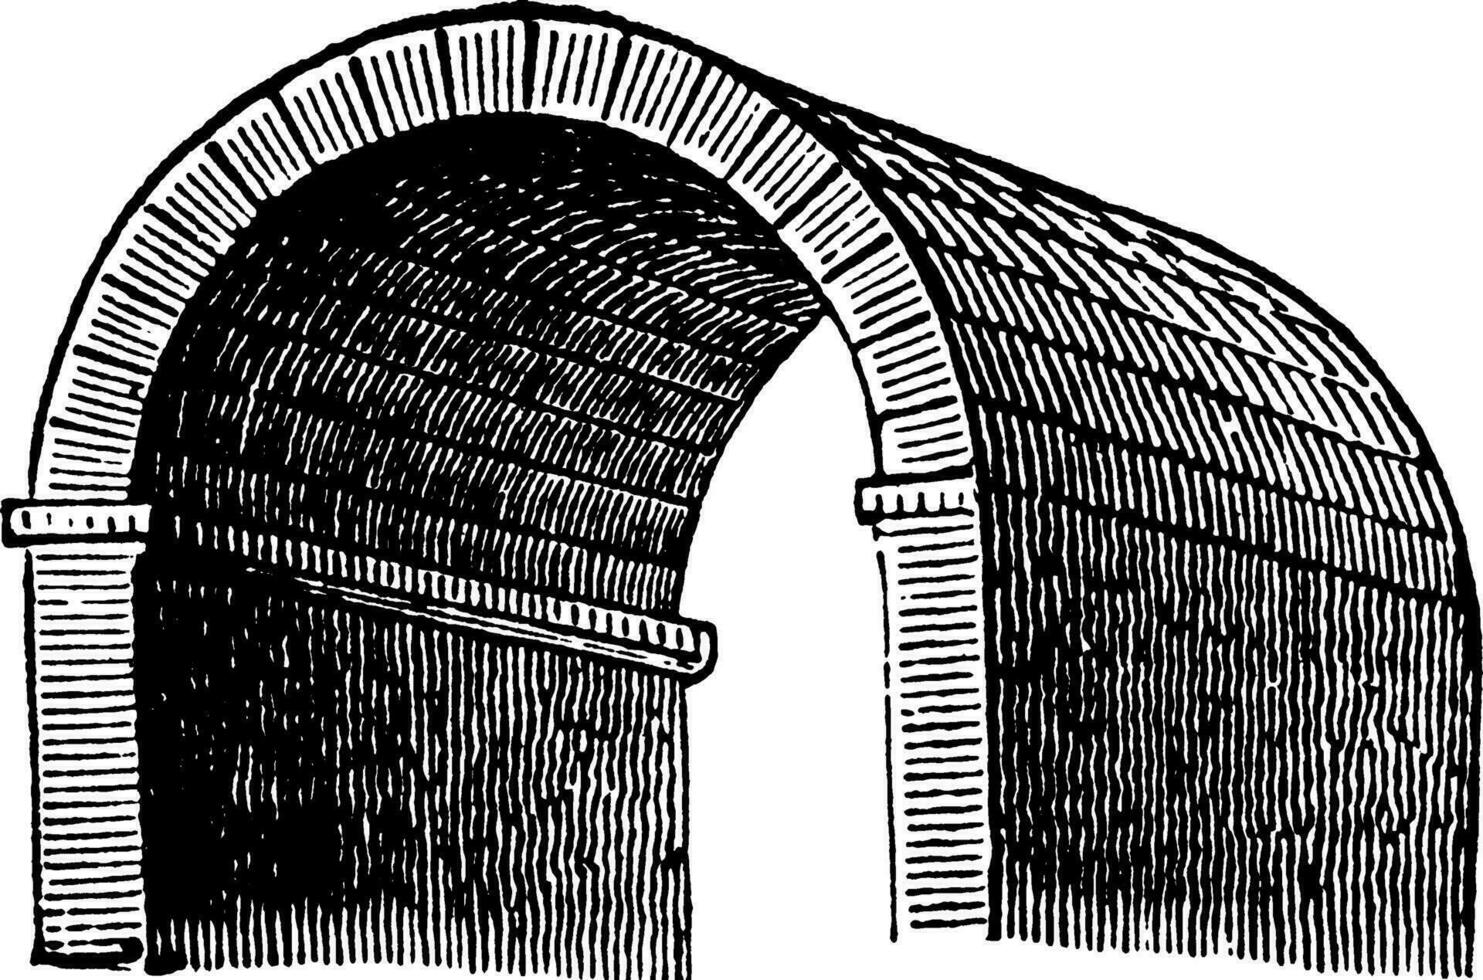 Barrel Vault, wagon,  vintage engraving. vector